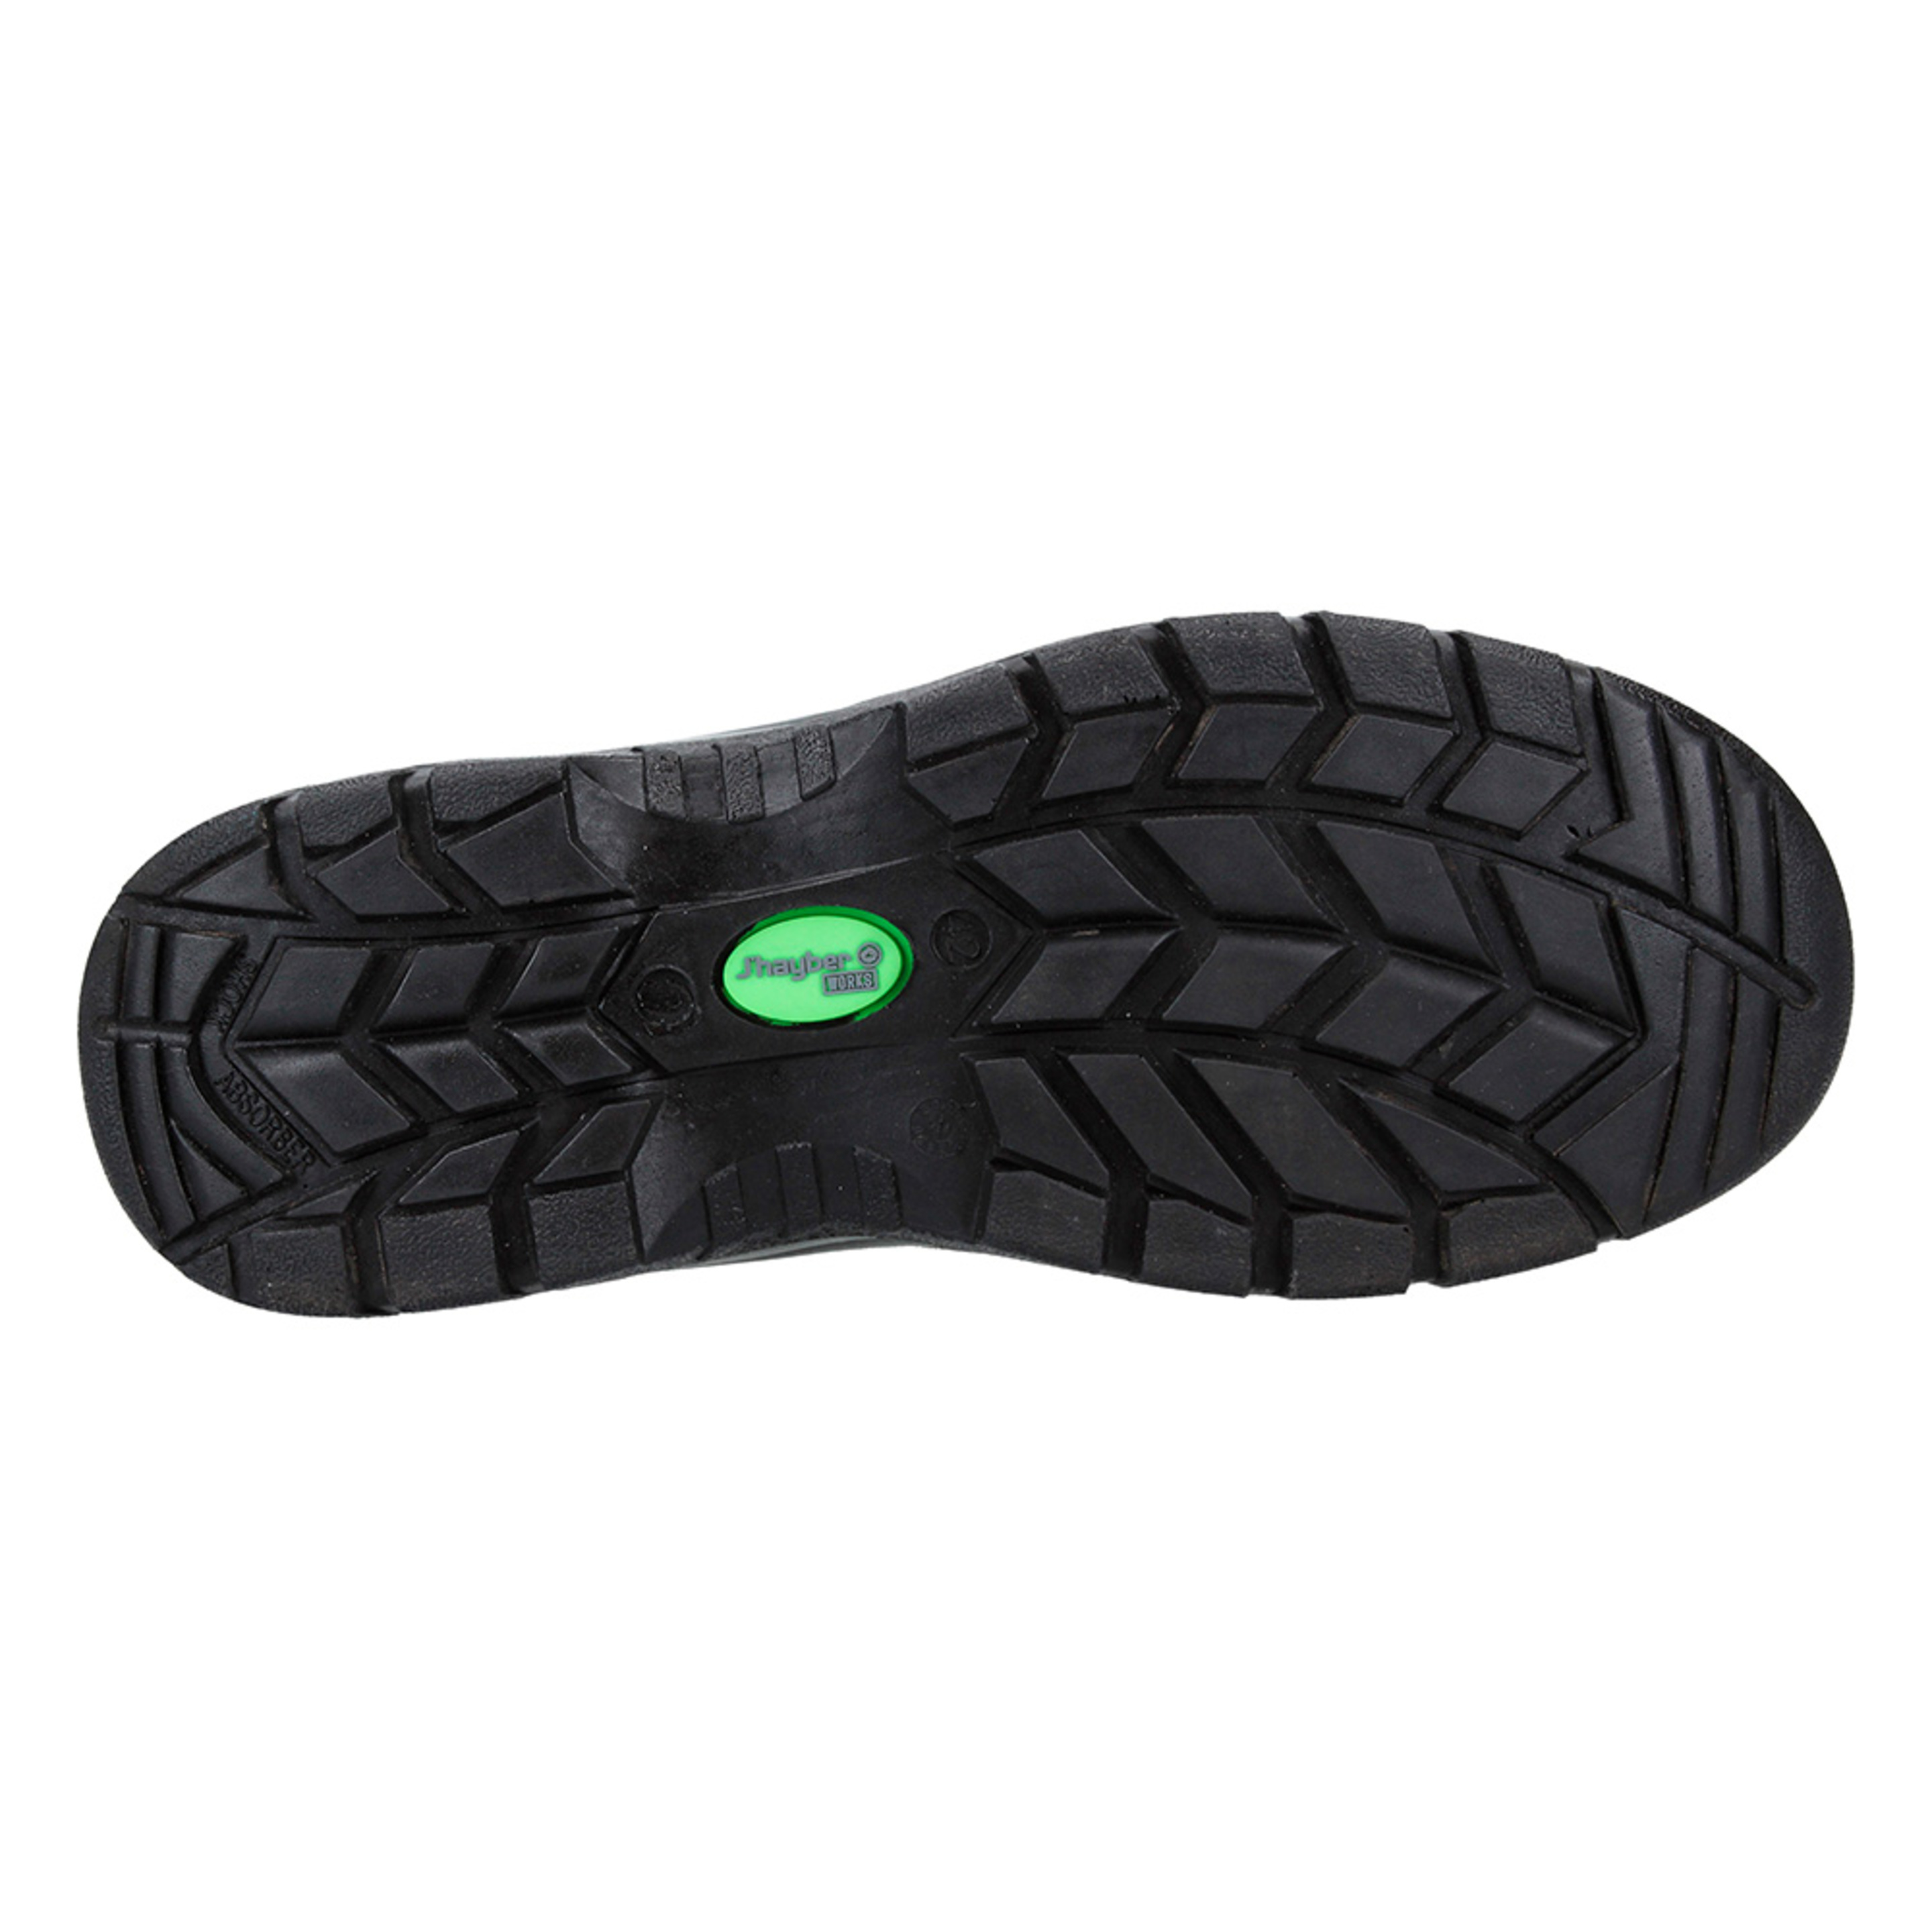 Zapato De Seguridad Titanio De J'Hayber Works - Gris/Verde - Titanio S1p Src  MKP